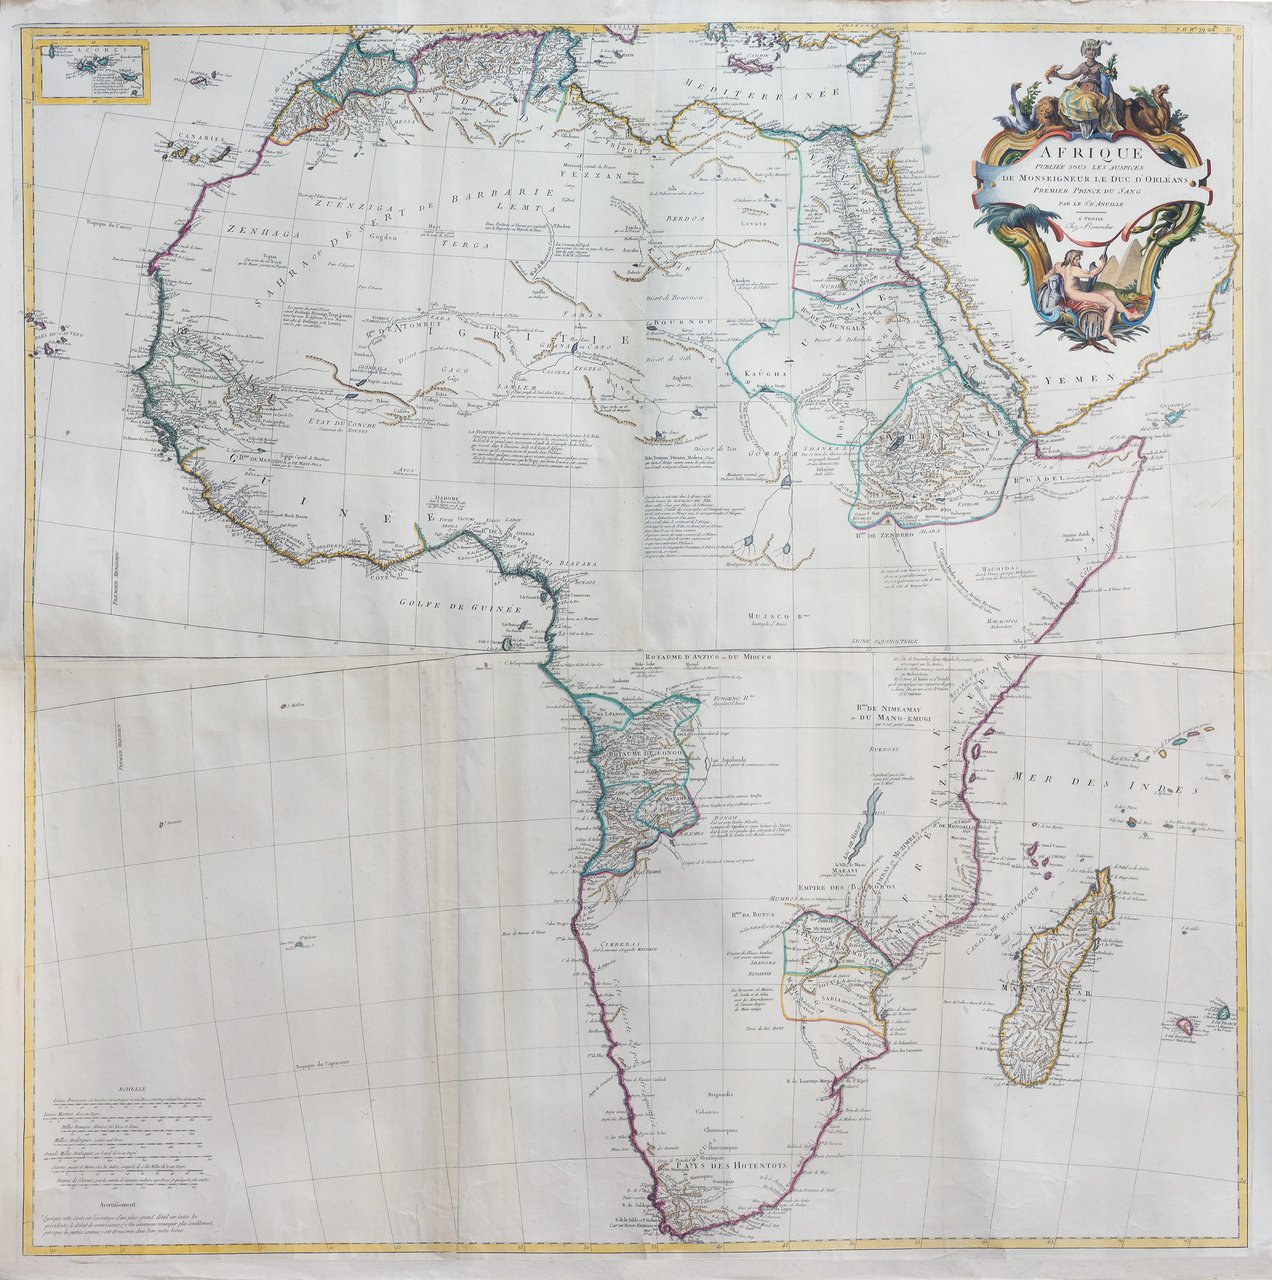 L'Afrique publiee sous les auspices de Monseigneur le Duc d'Orleans…